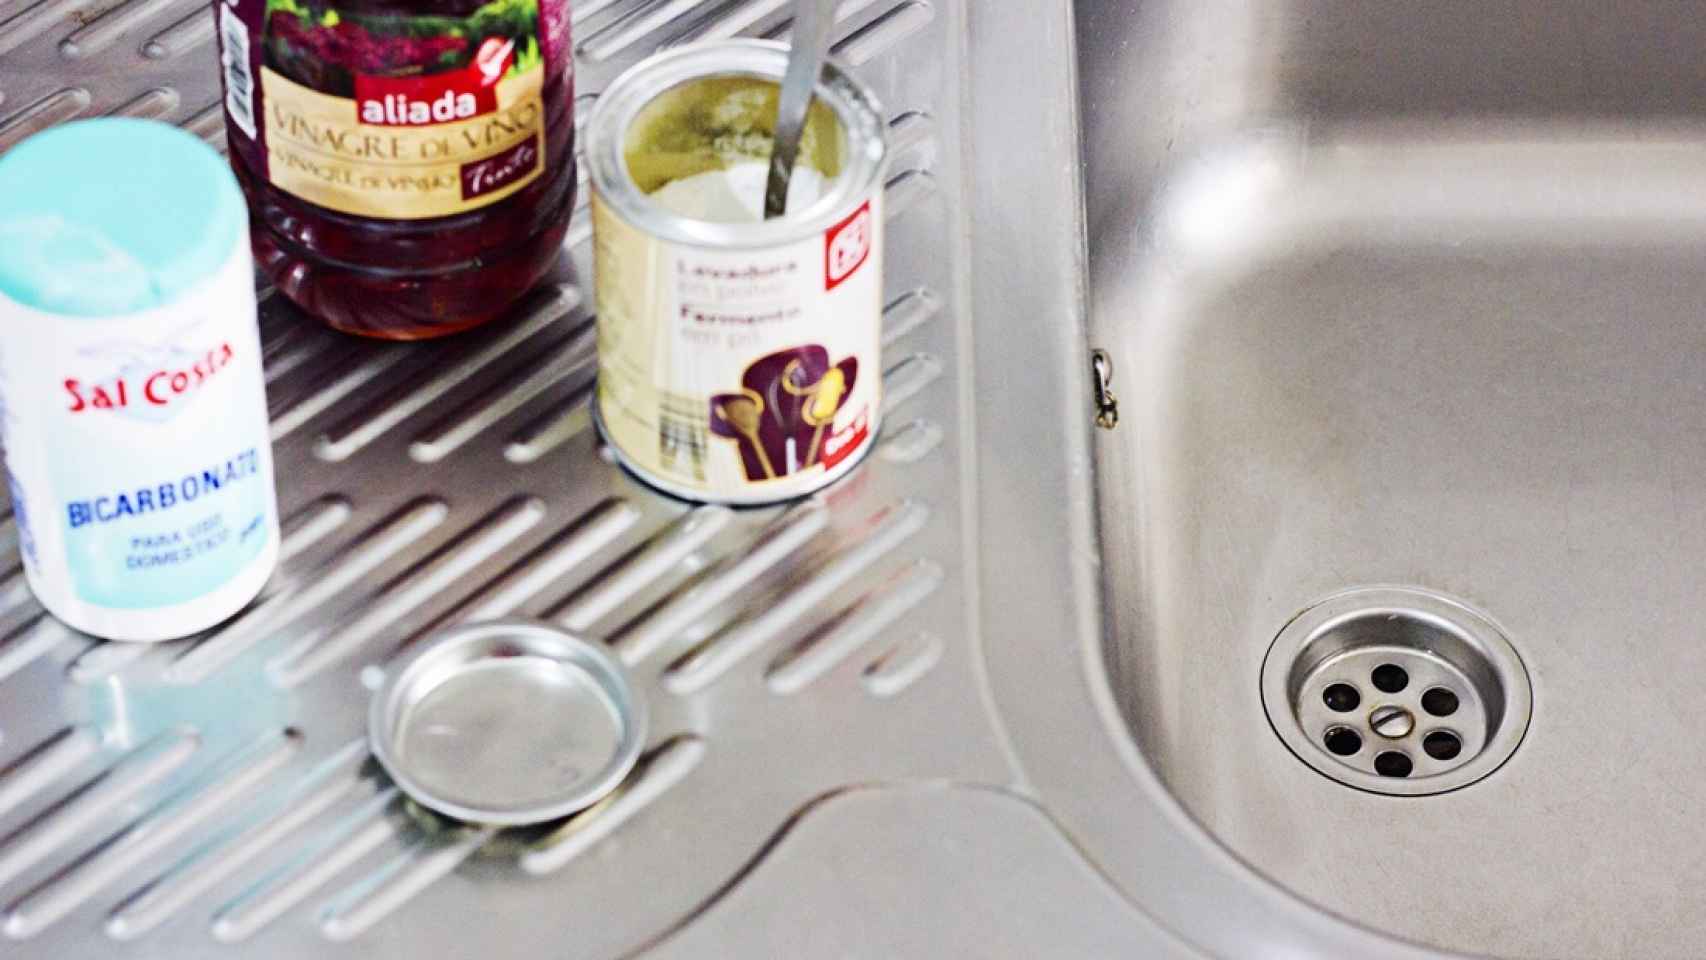 Trucos de limpieza: Esta es el mejor truco para desatrancar el fregadero  rápidamente si lo tienes atascado